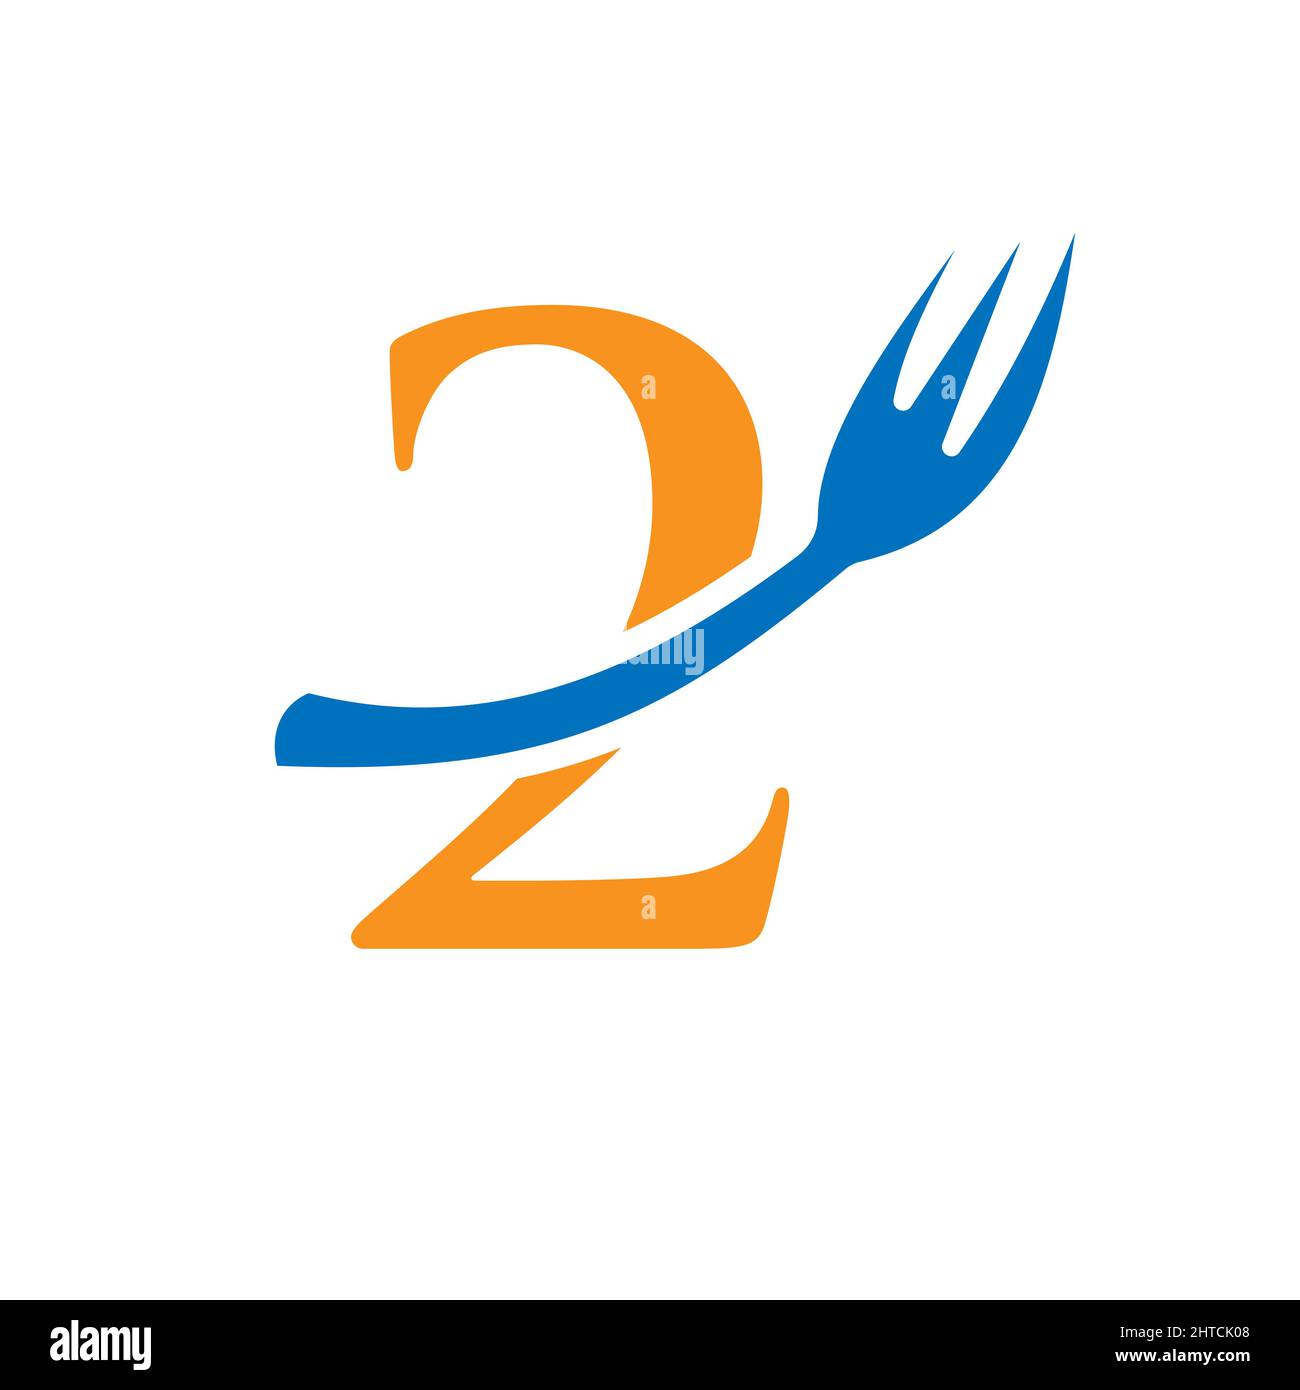 Restaurant Logo Template On Letter 2. Letter 2 Restaurant Logo Sign Design Stock Vector